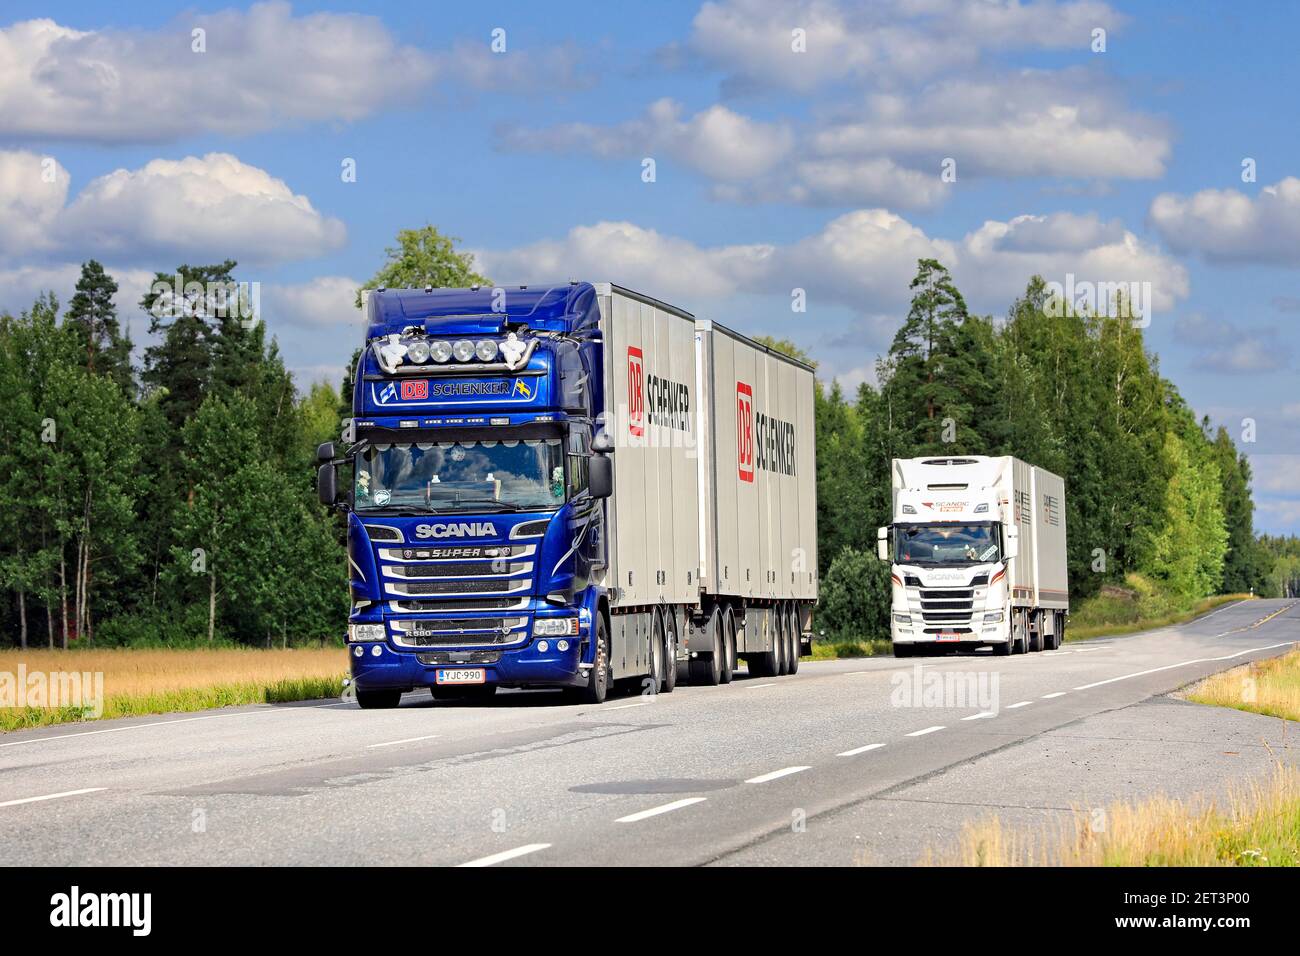 Dos camiones de transporte de mercancías Scania, Blue DB Schenker en primer plano, transportan mercancías a lo largo de la autopista 10 en el verano. Jokioinen, Finlandia. 7 de agosto de 2020 Foto de stock